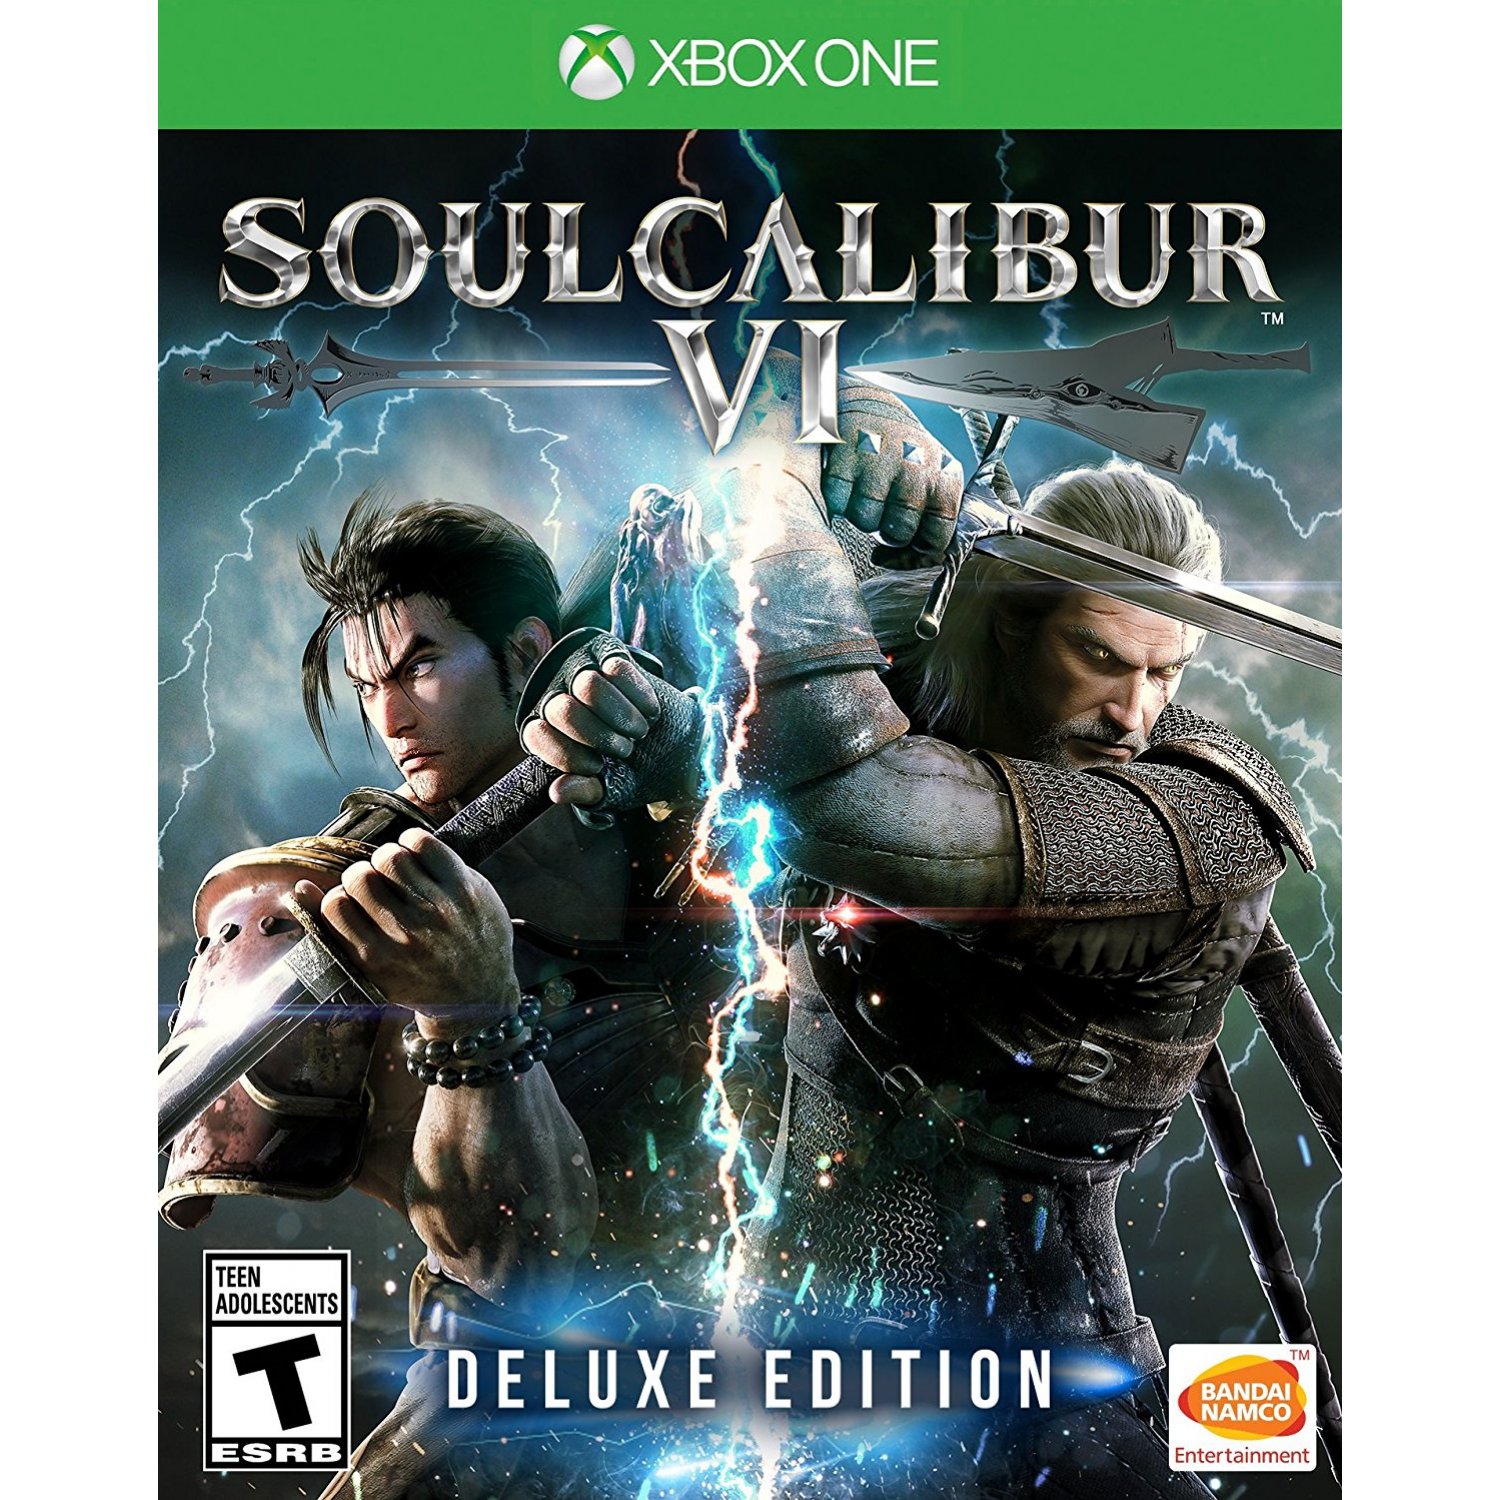 XBOX ONE - SoulCalibur VI Deluxe Edition